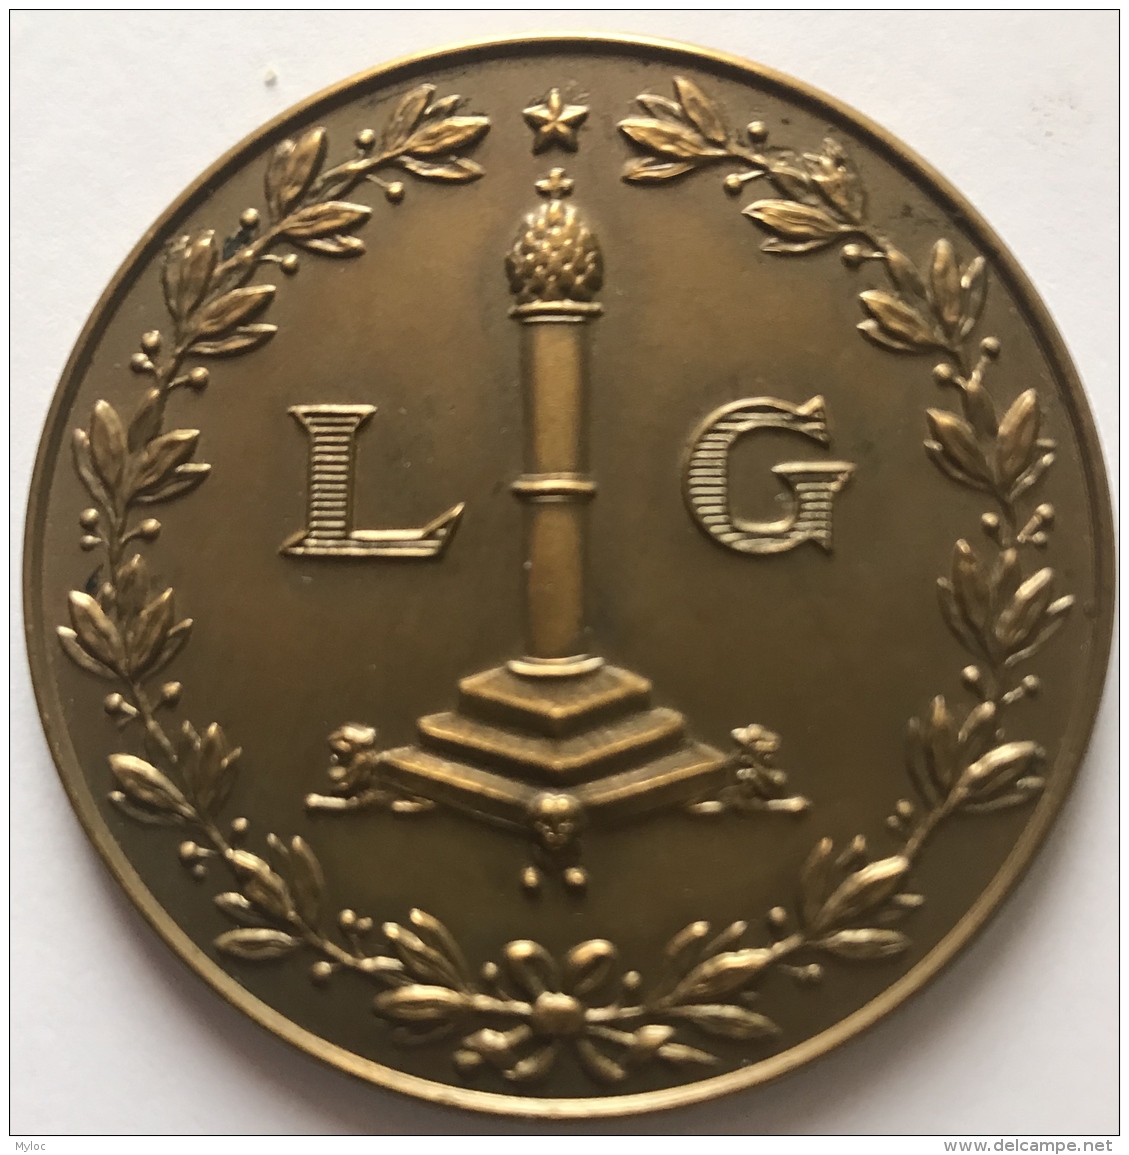 Médaille. Chambre Belge Des Comptables Liège. 1894-1954. 50mm  - 44 Gr - Unternehmen